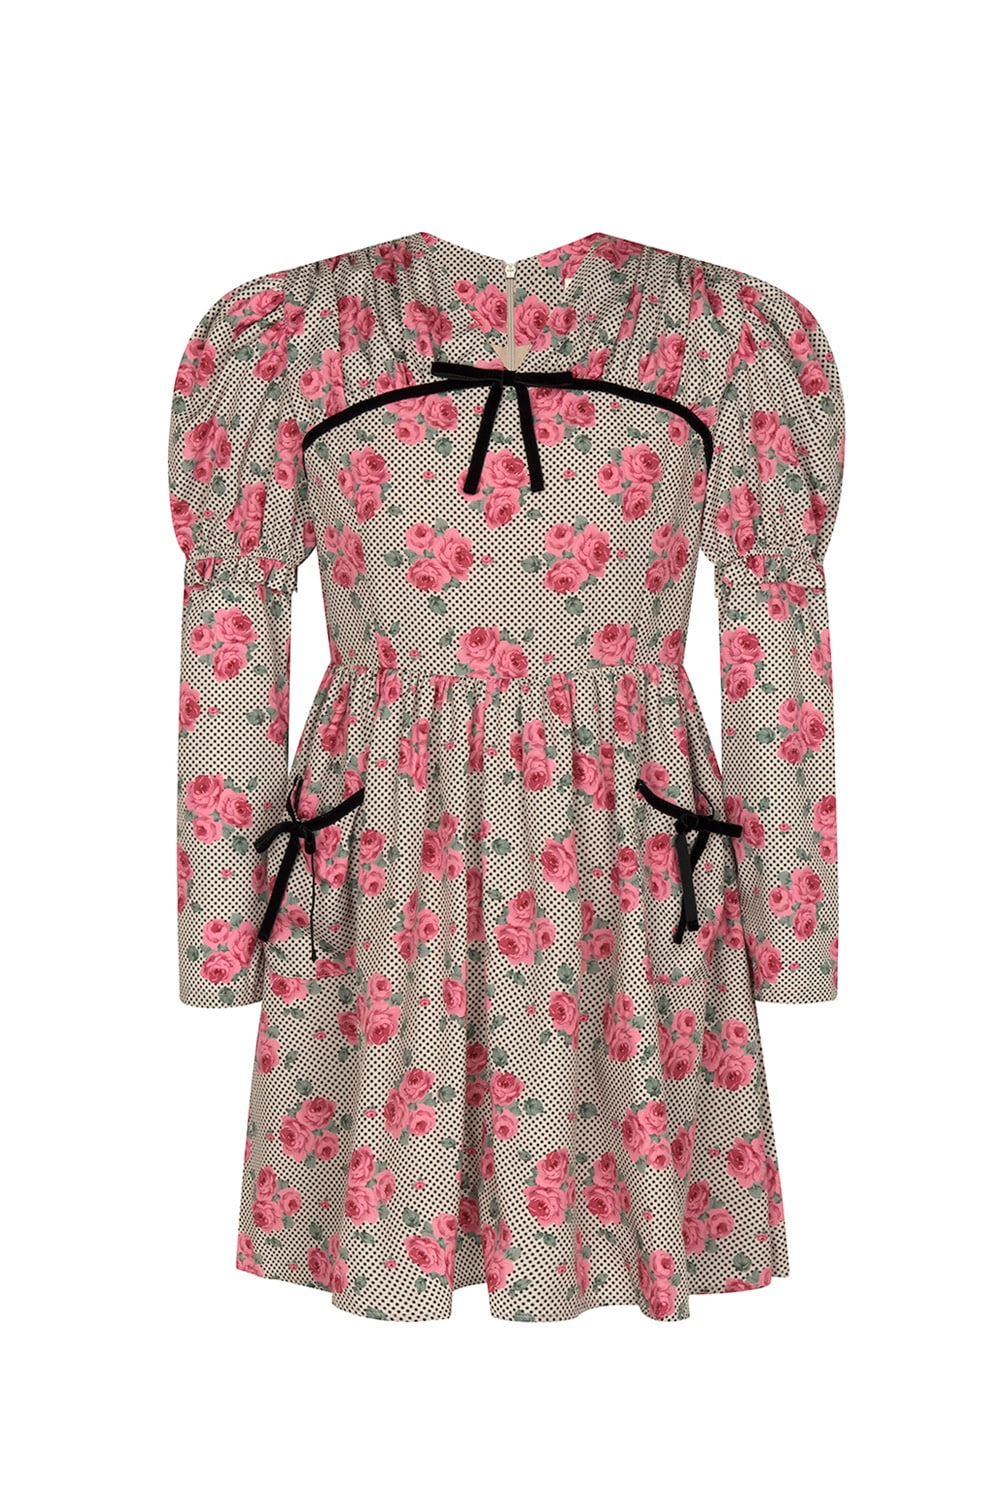 Juliet mini dress(pink)